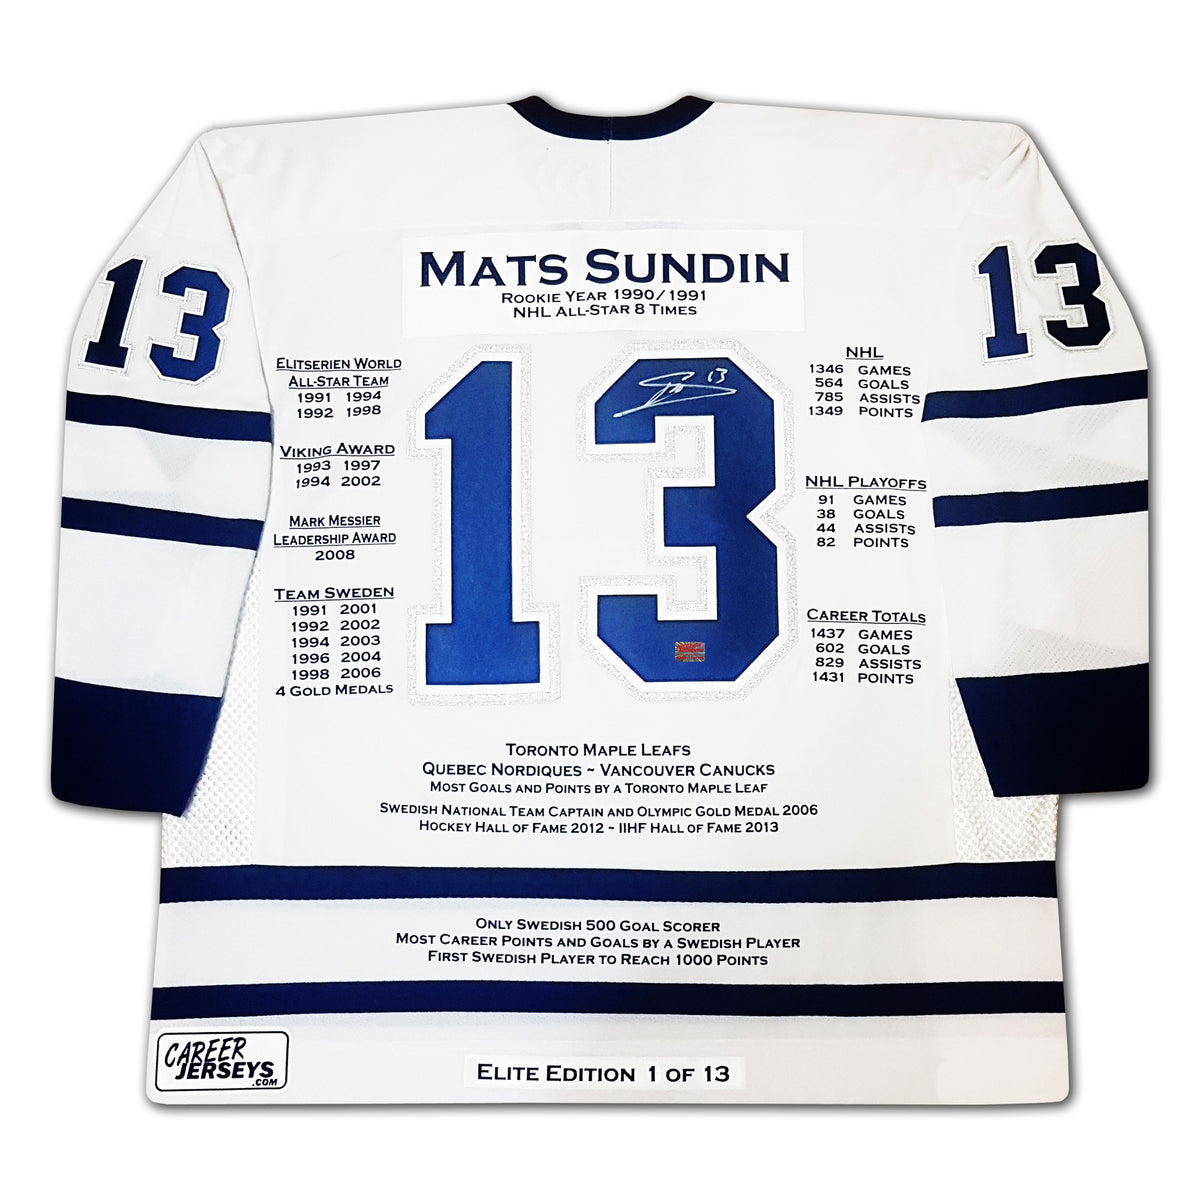 Mats Sundin, 1346 NHL games - 564 goals - 785 assists - 1349